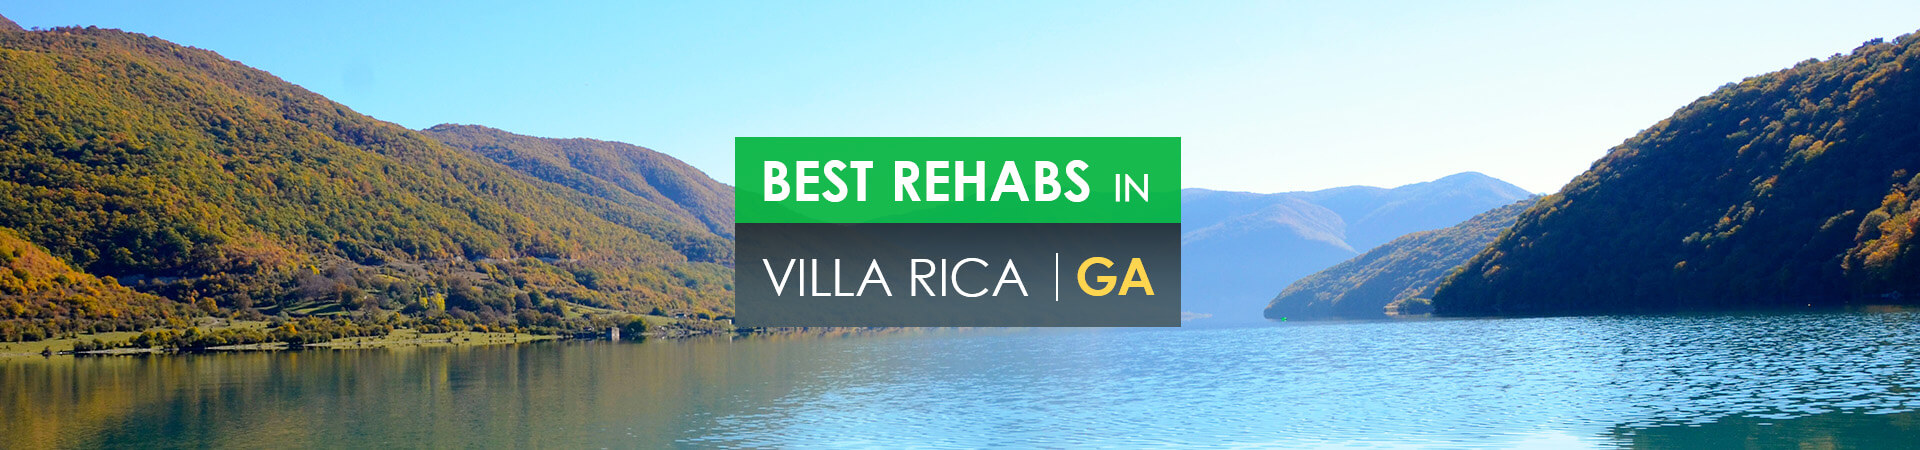 Best rehabs in Villa Rica, GA